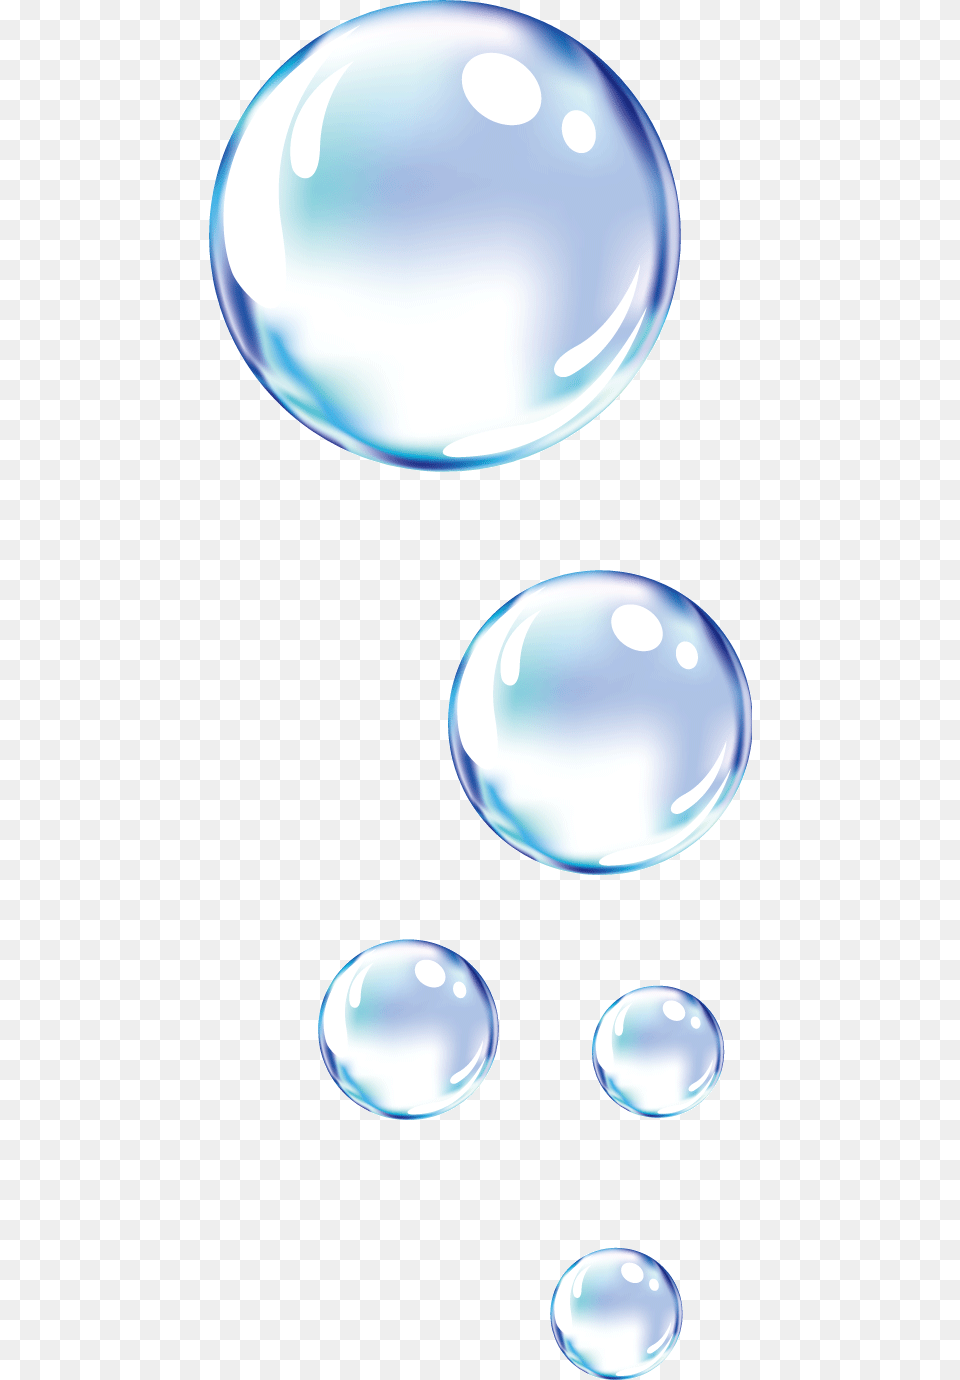 Soapbubble Bubble Bubbles Burbuja Burbujas, Sphere, Astronomy, Moon, Nature Png Image